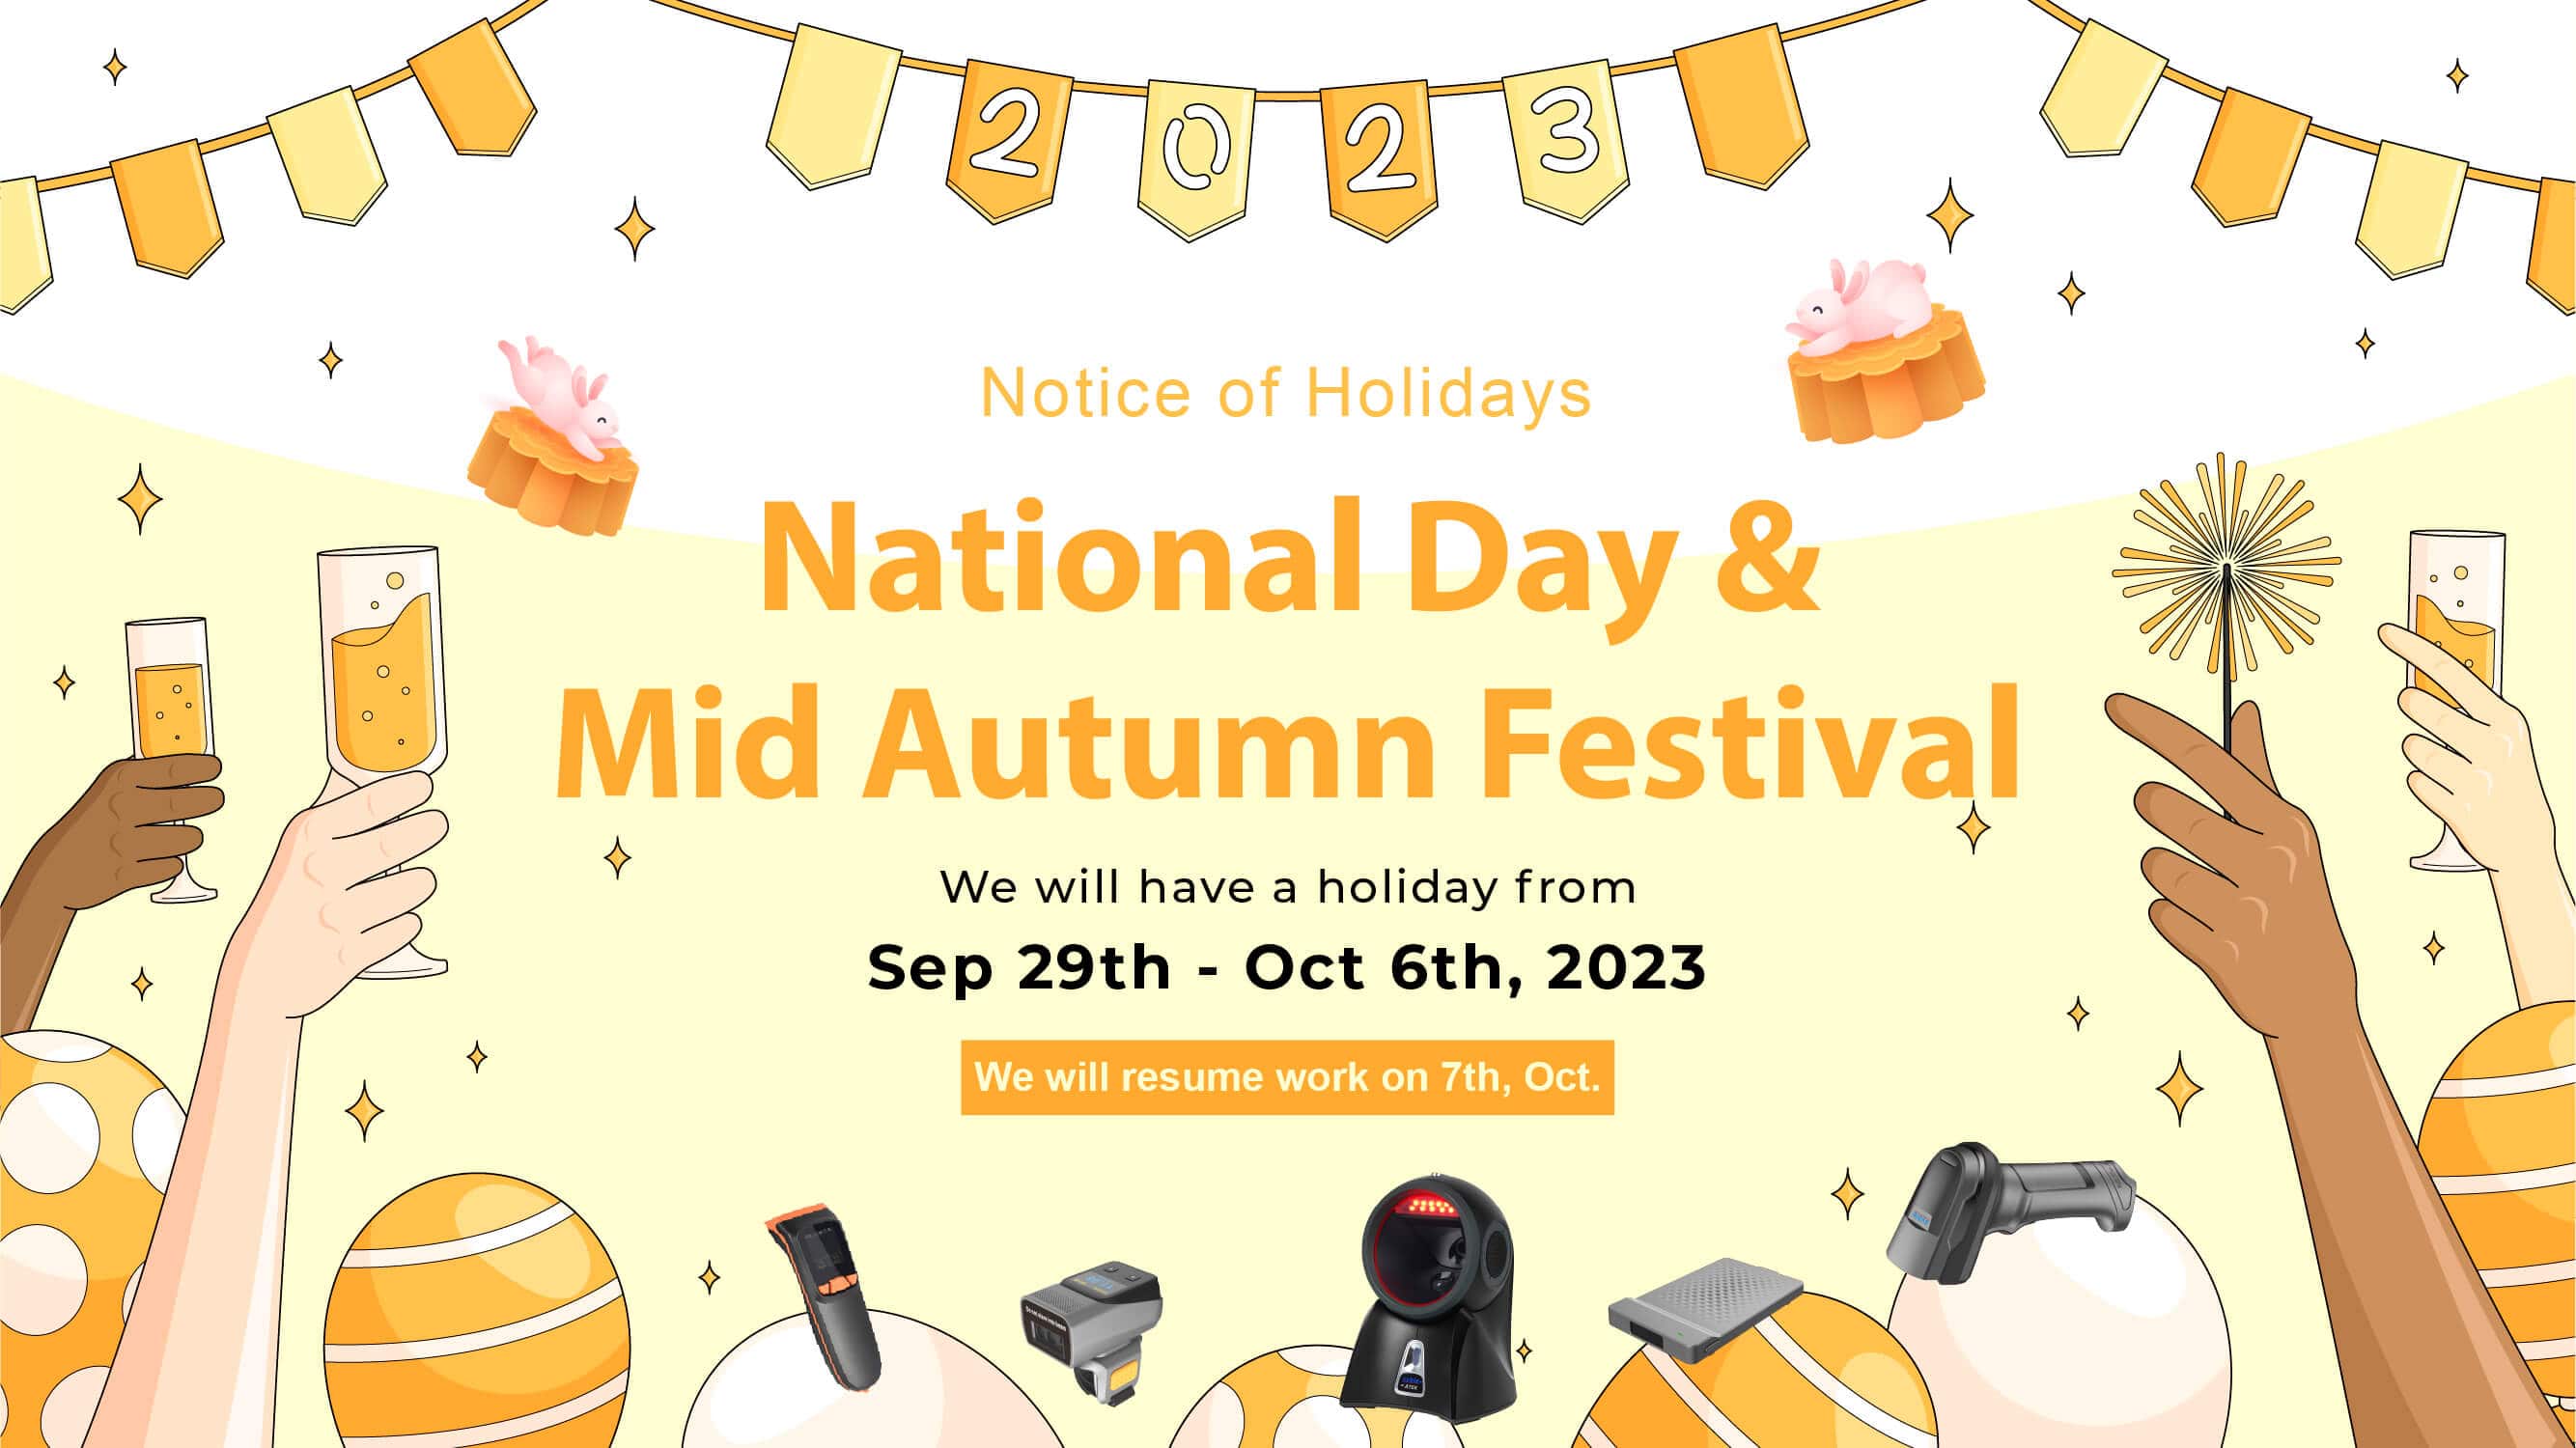 O Festival do Meio Outono e o Aviso de Feriado do Dia Nacional